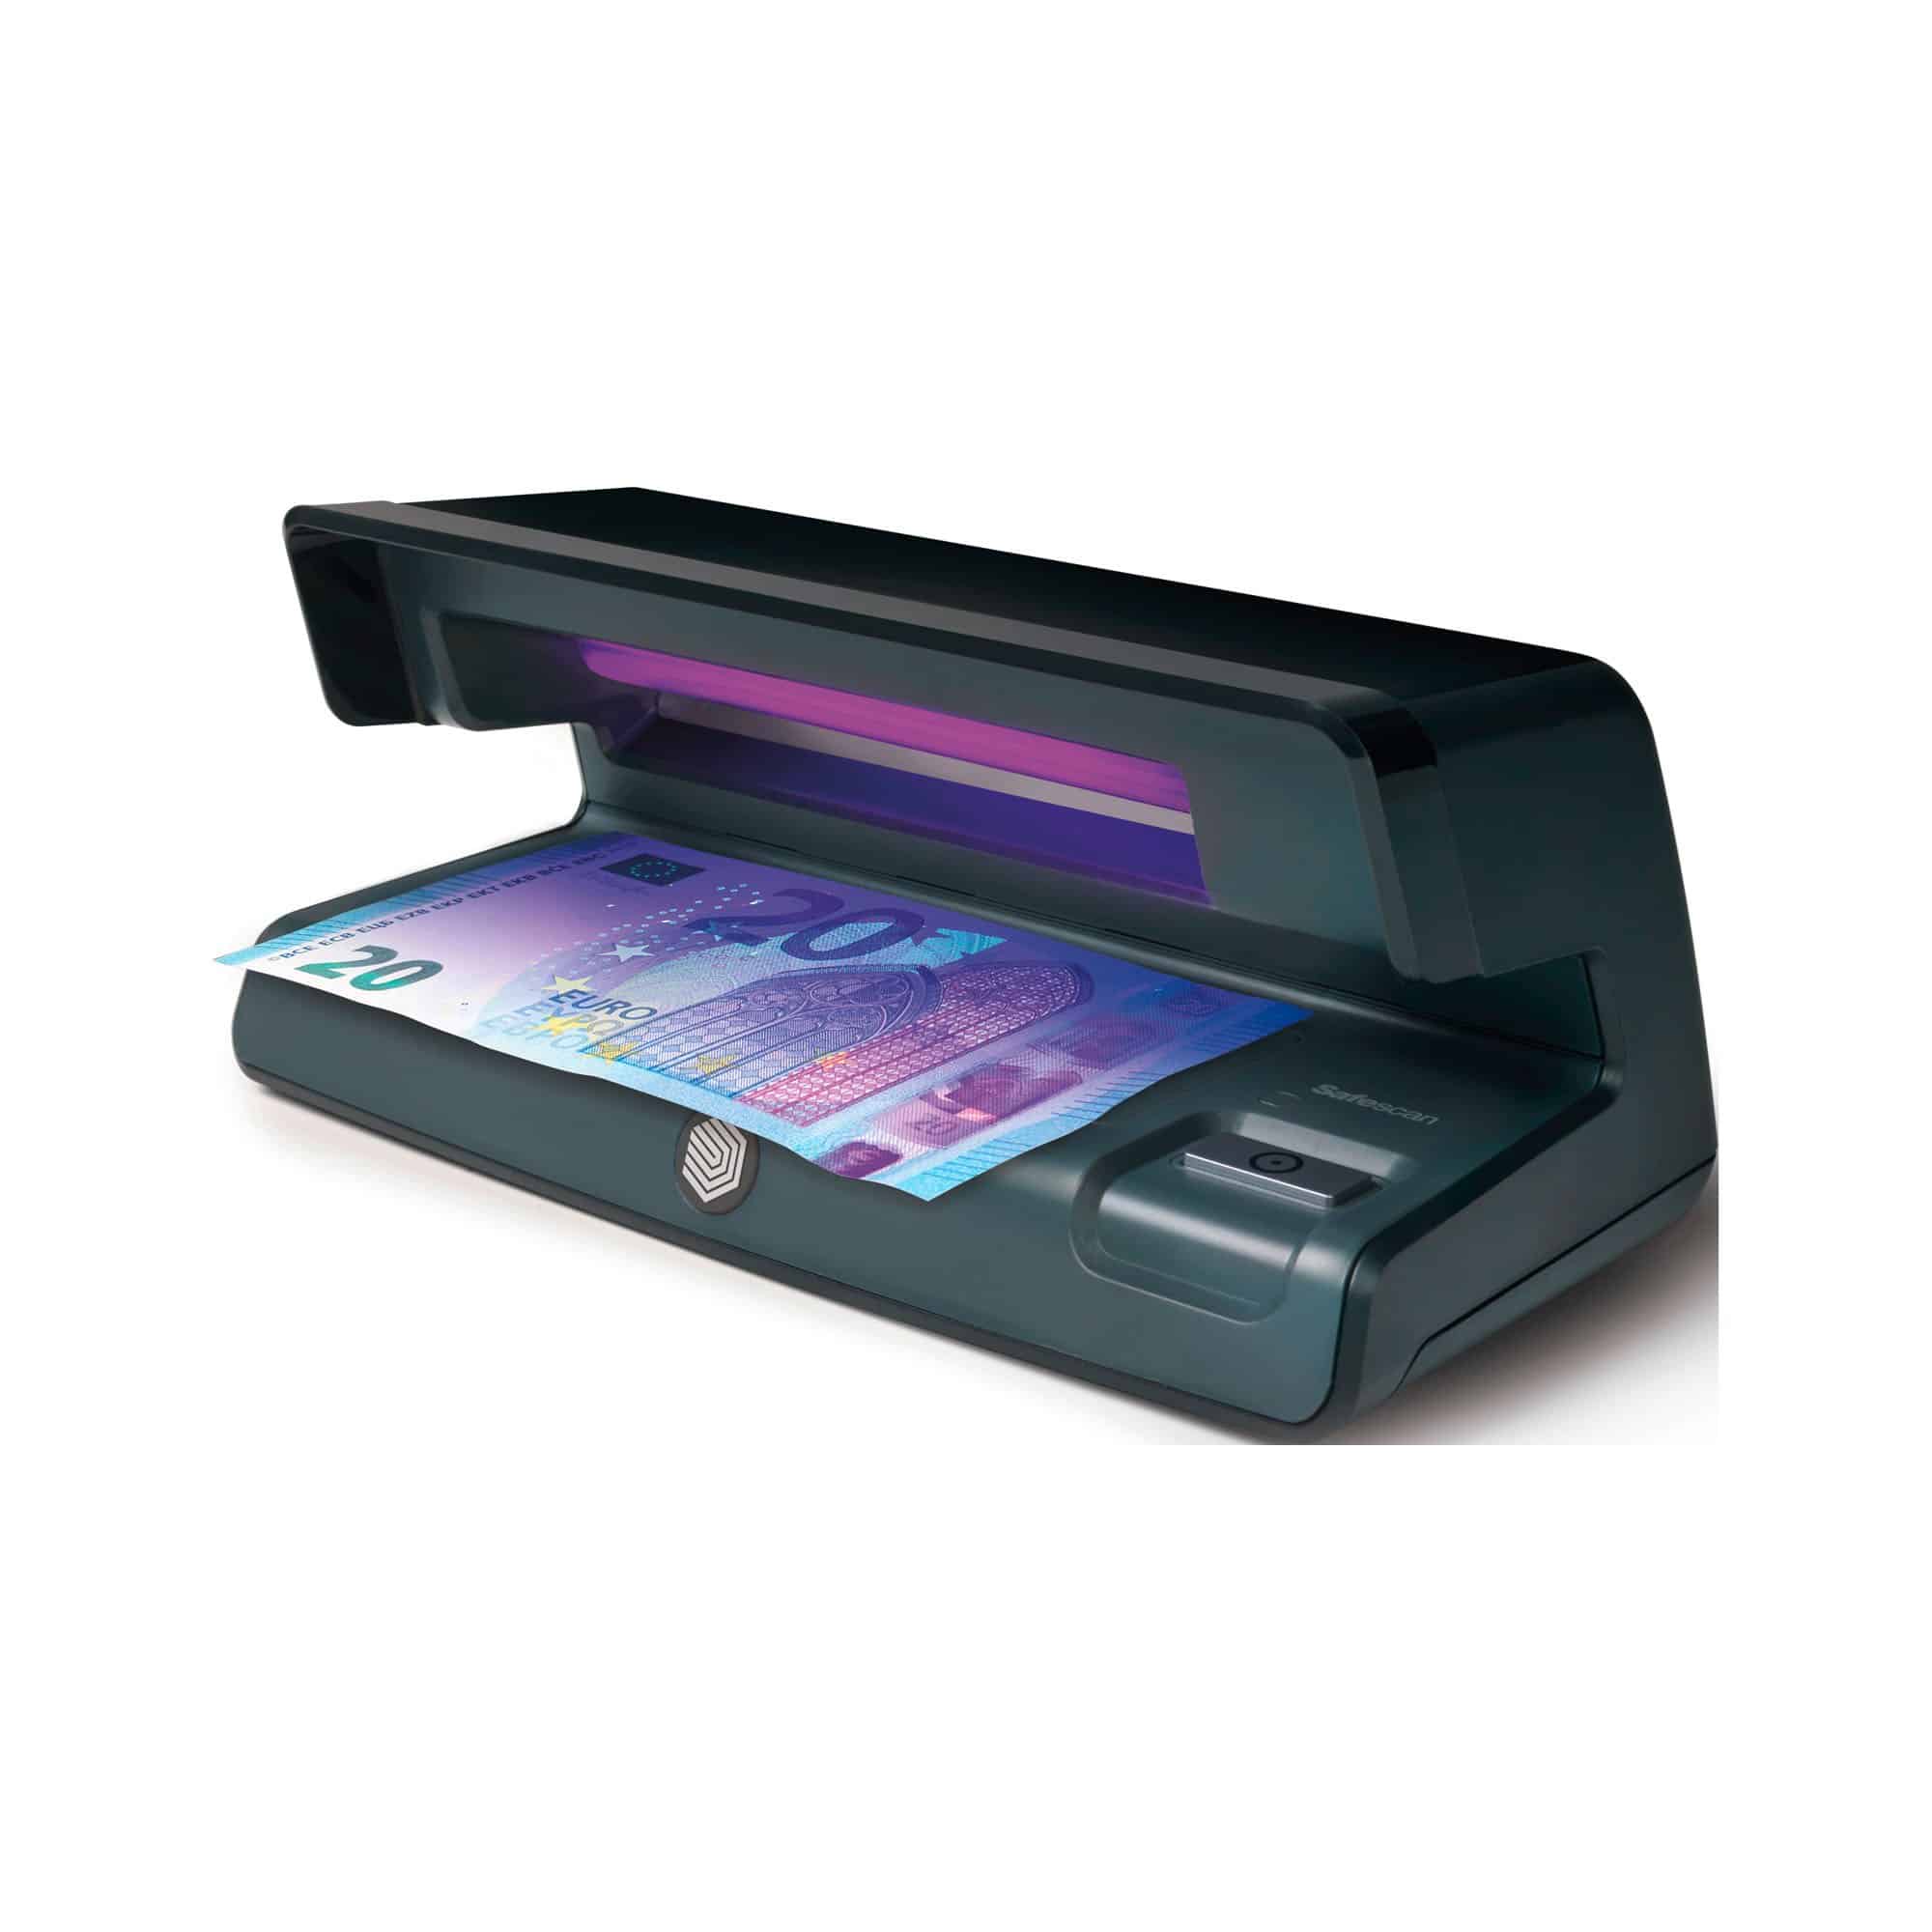 Scanner portable compact et léger Detecteur Faux Billet & Compteuse de Billets 2-en-1 Faux Dollars Faux Billets Livre Sterling Detecteur Faux Billet UV/MG/IR pour Faux Billets Euros